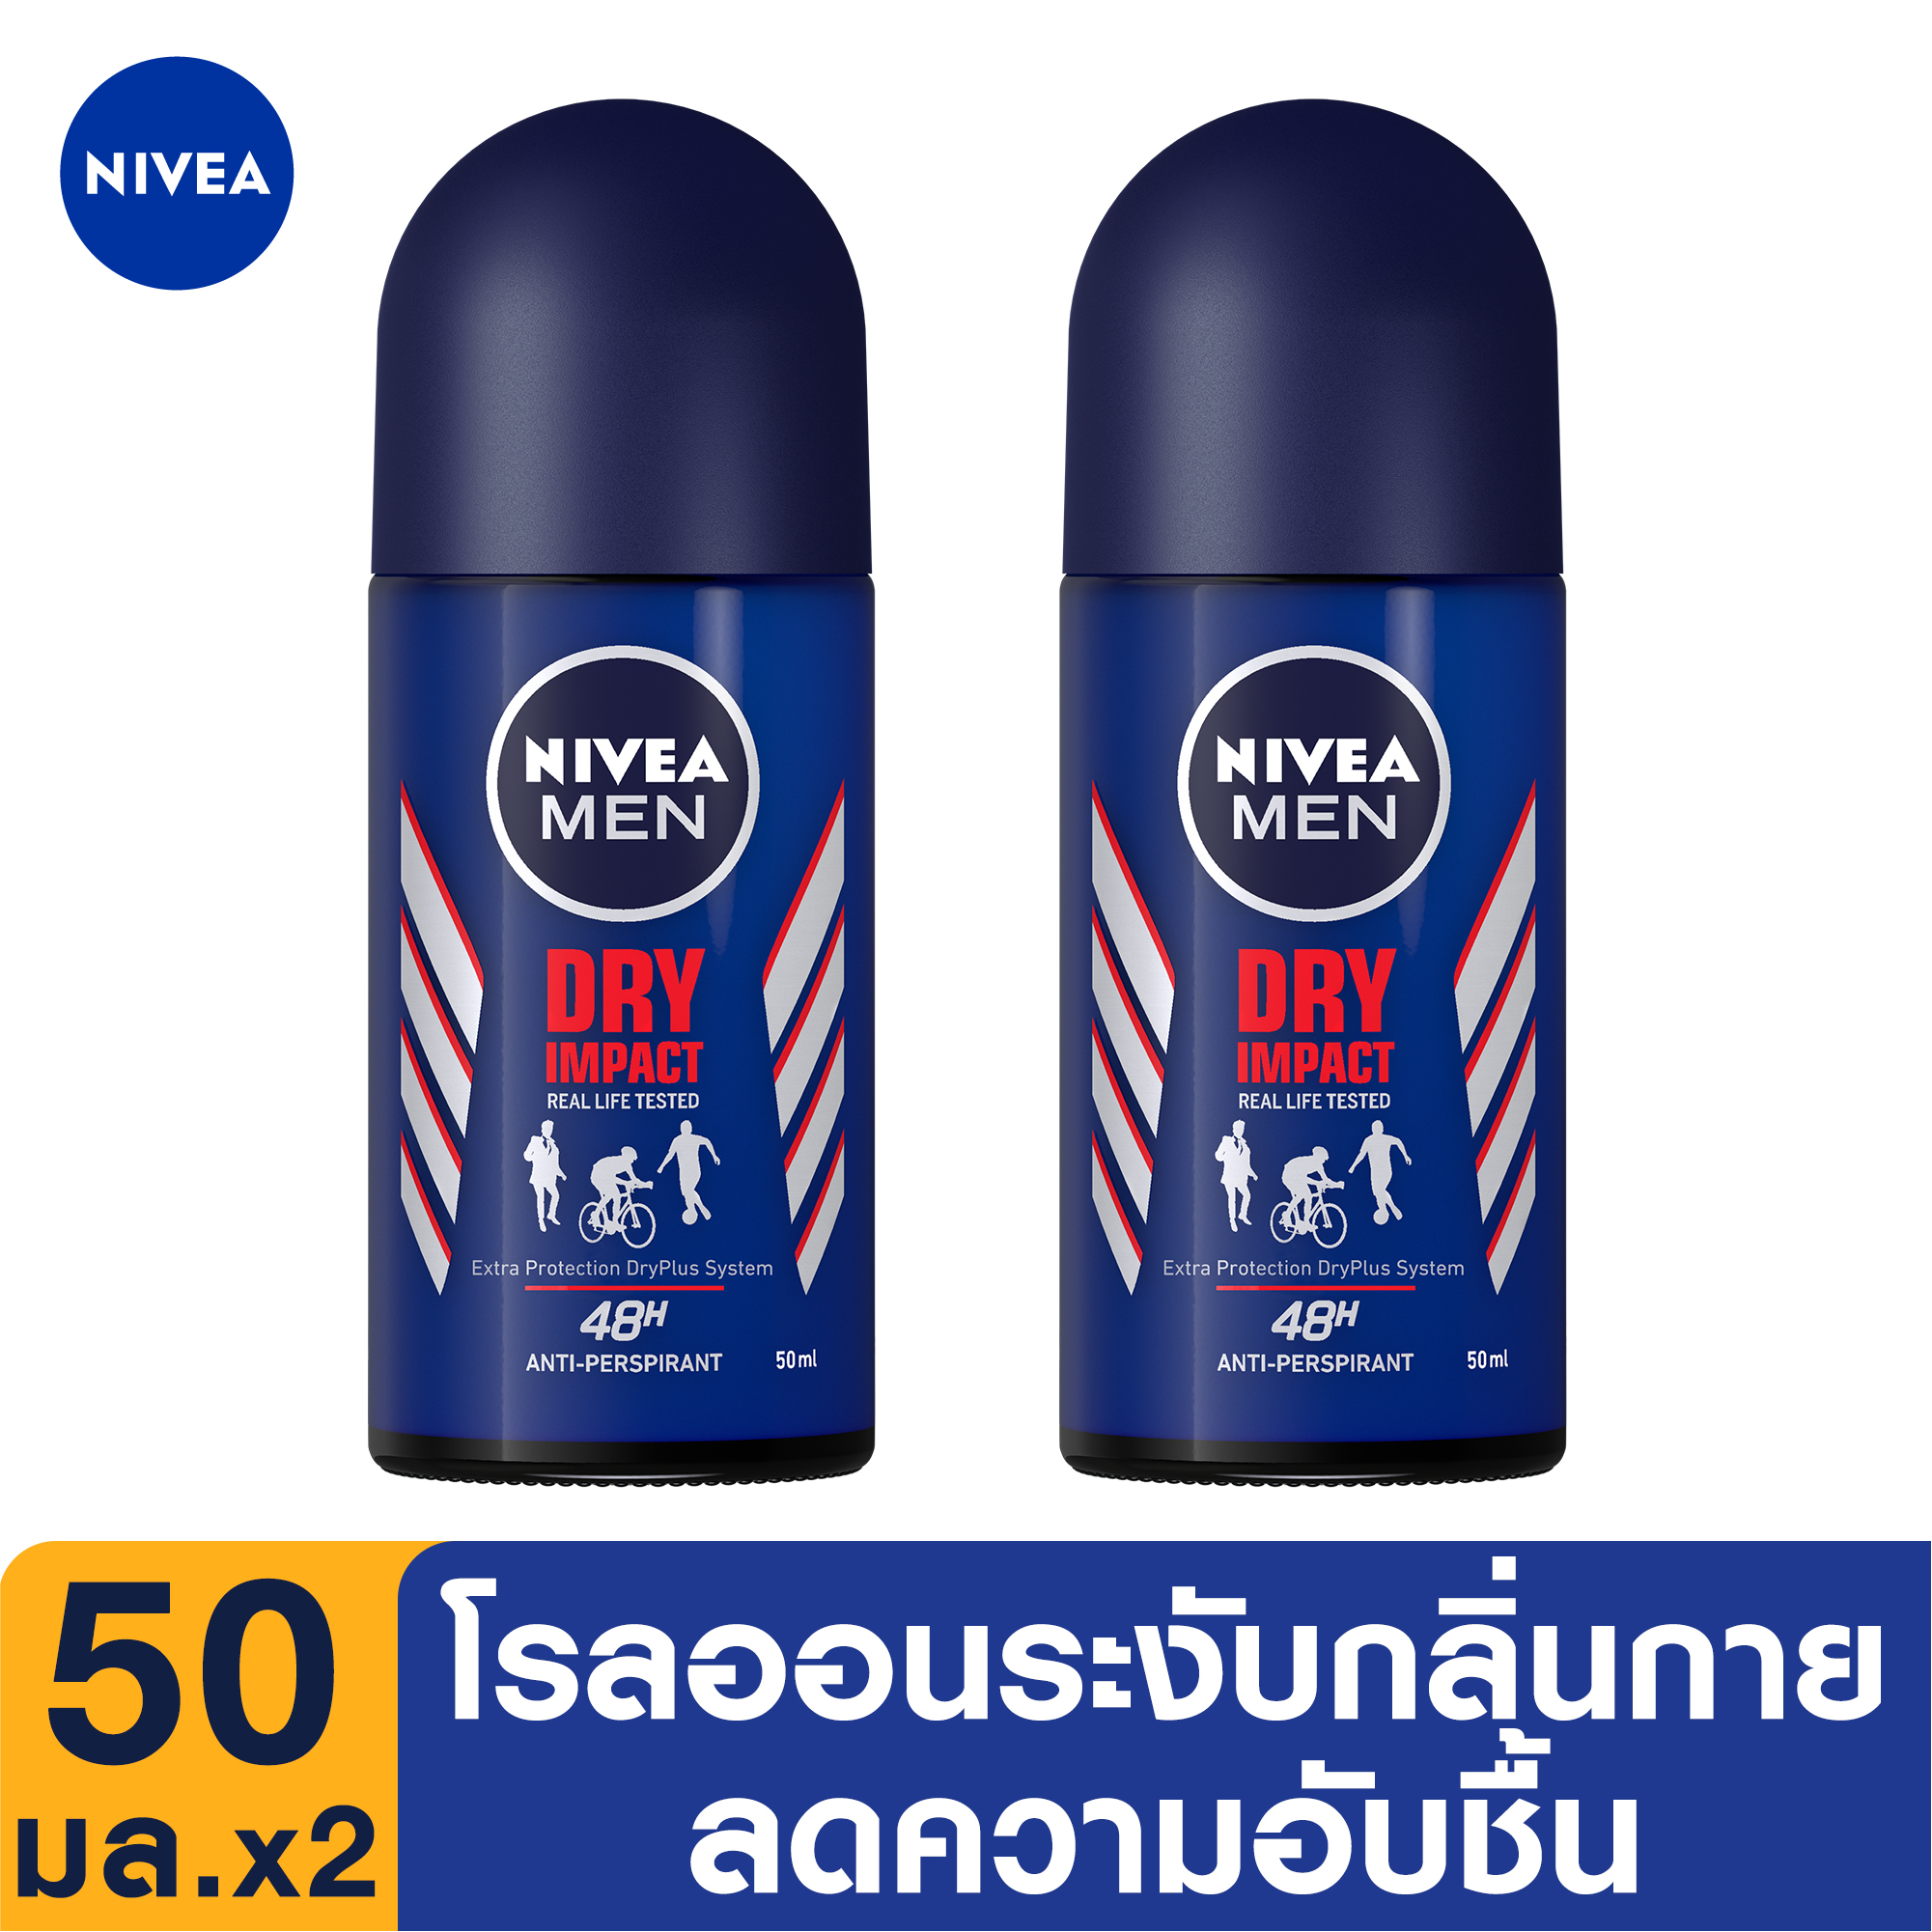 NIVEA Deo Men Dry Impact Roll On 50ml. 2 pcs. นีเวีย ดีโอ เมน ดราย อิมแพ็ค โรลออน ระงับกลิ่นกาย สำหรับผู้ชาย 50 มล. 2 ชิ้น (โรลออน ผู้ชาย, deodorant, ปกป้